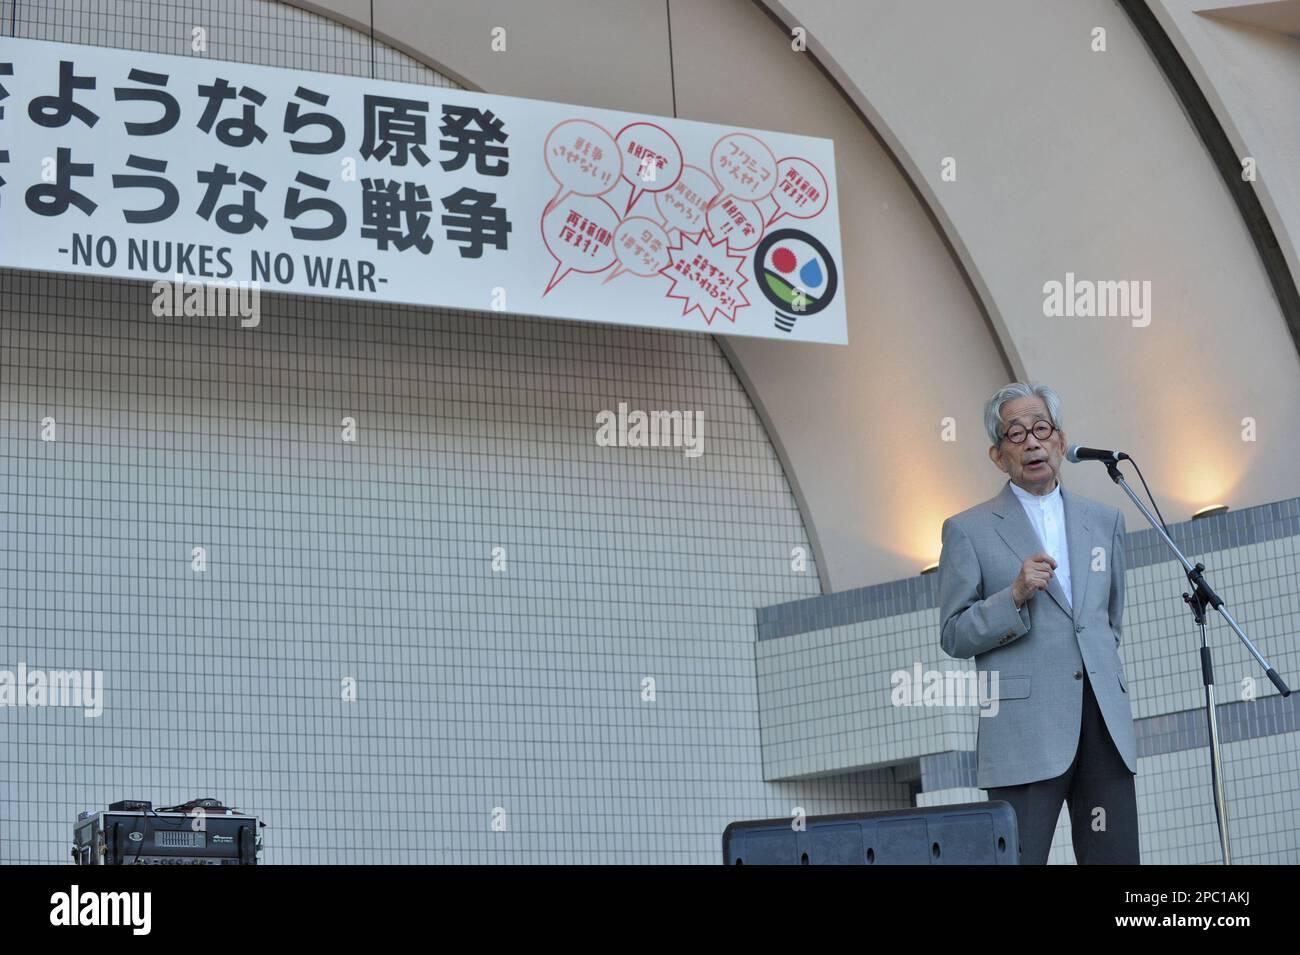 Nobelpreisträger Kenzaburo Oe spricht bei Protest gegen Premierminister Shinzo Abe Sicherheitsrichtlinien und Kernenergie in Tokio am 23. September 2015. Einige 25.000 Menschen nahmen nach Angaben der Organisatoren. Stockfoto